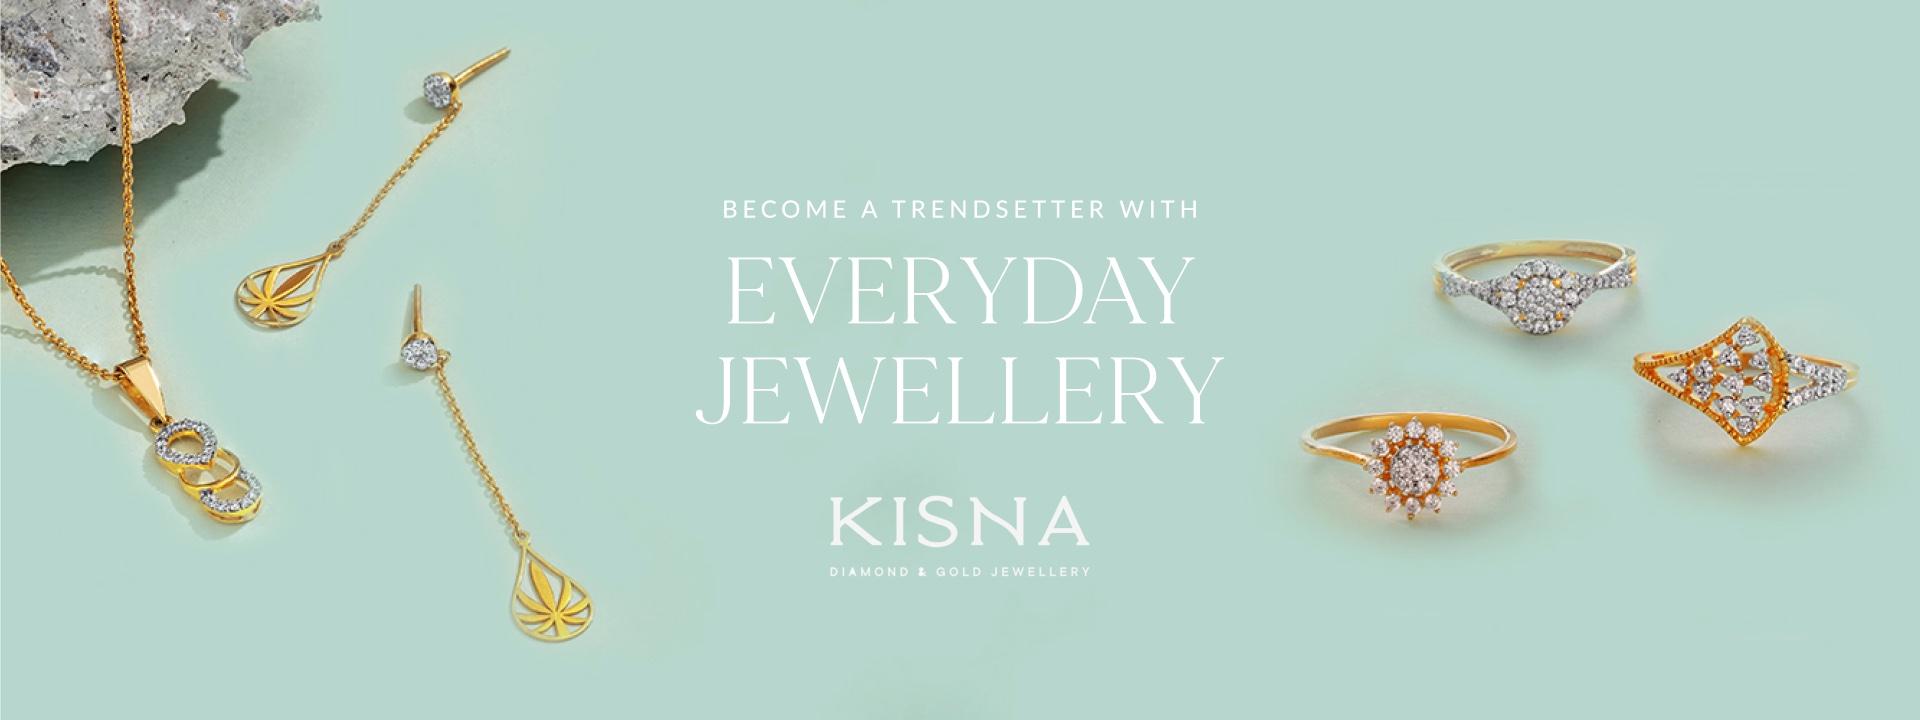 Kisna Jewelry